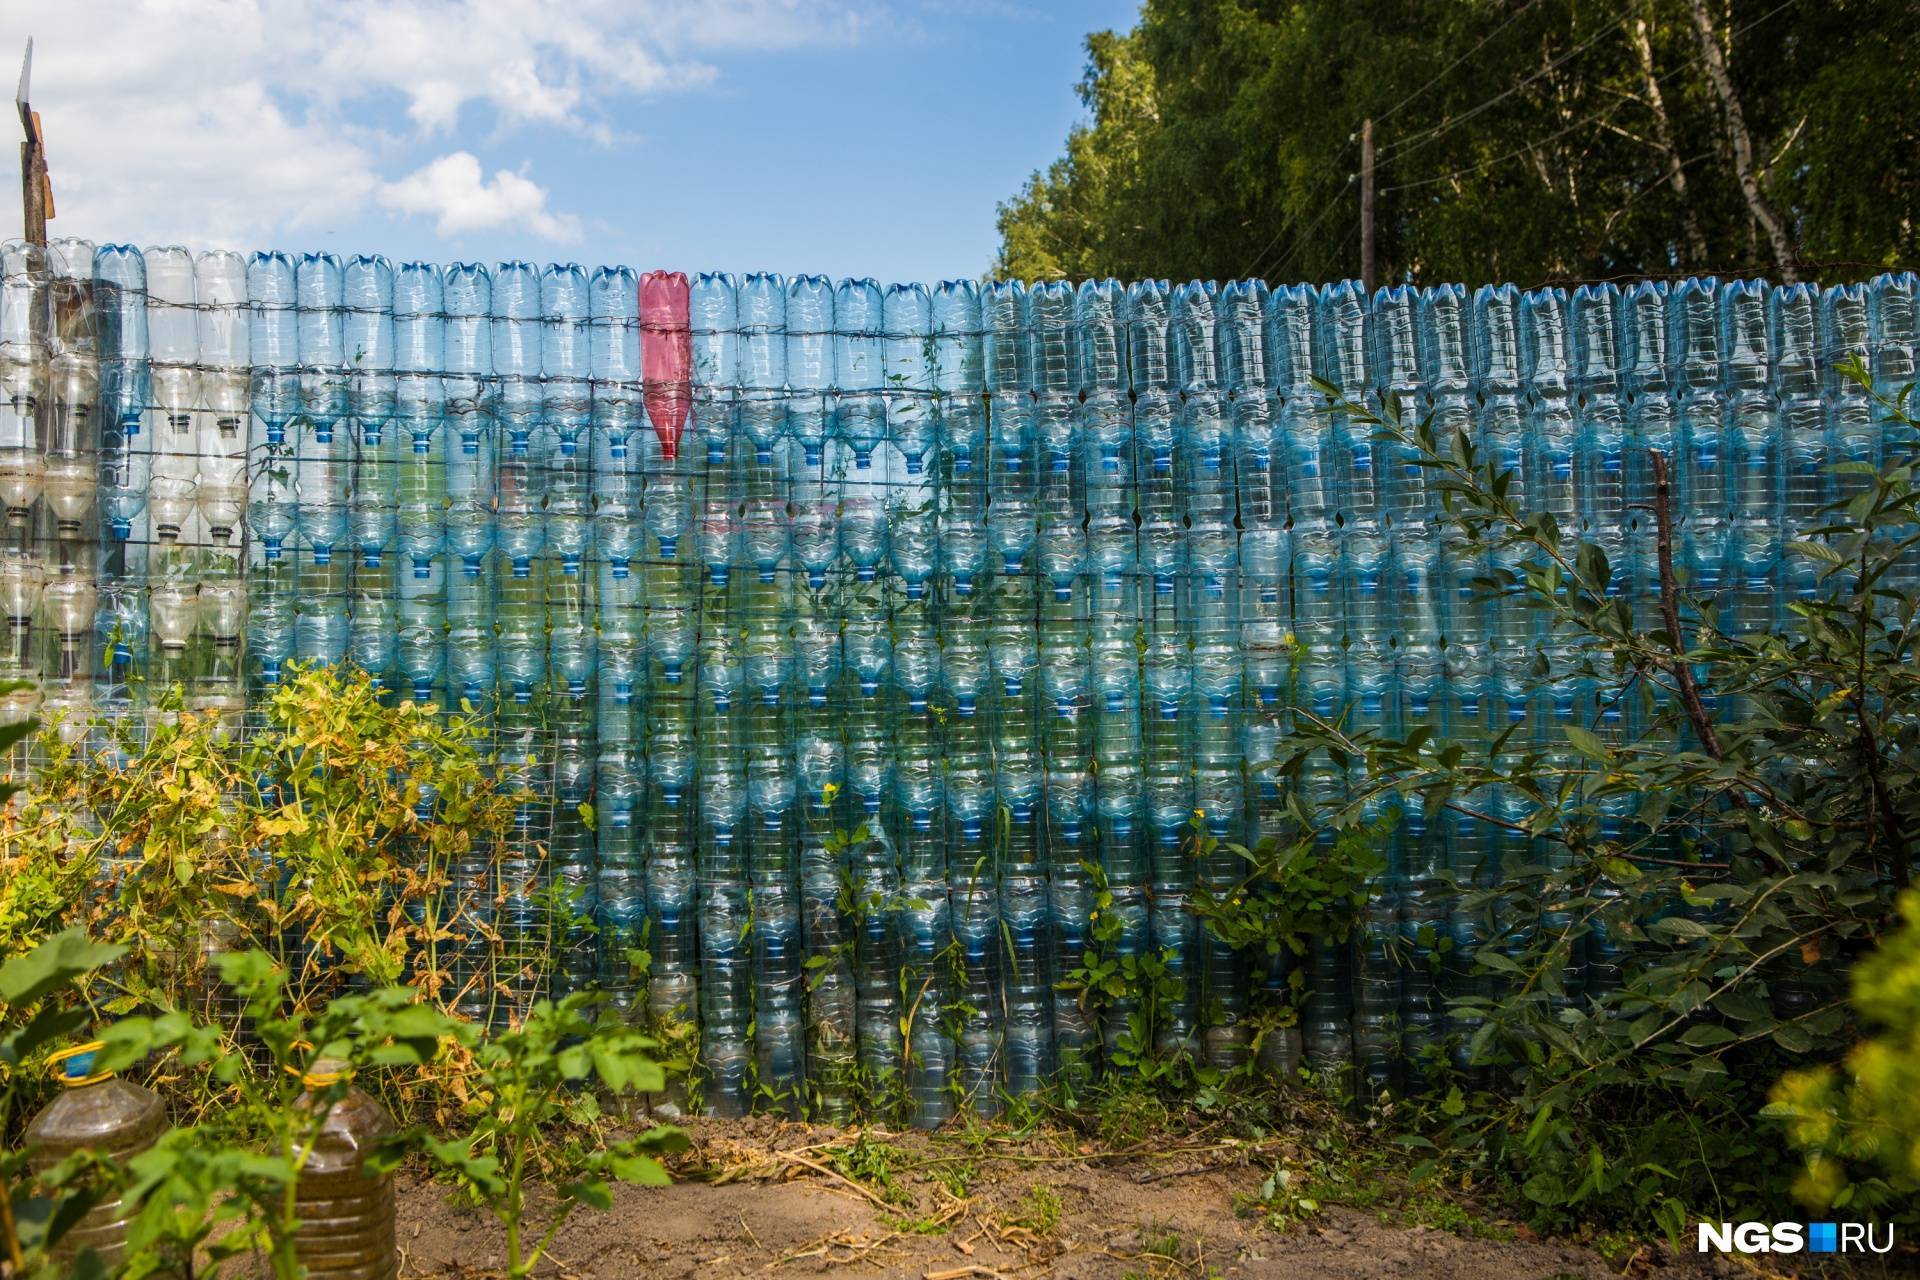 Забор из пластиковых бутылок на участке: как сделать своими руками, фото с идеями и вариантами